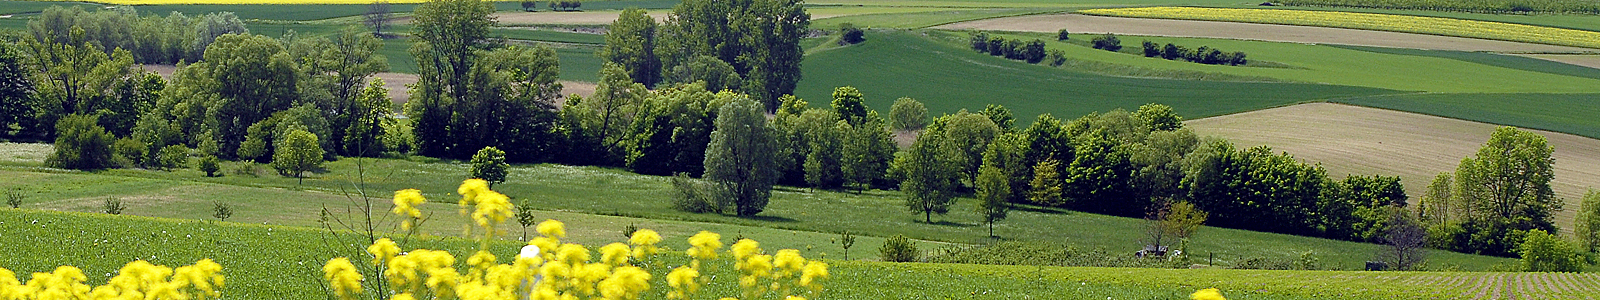 Landschaft mit Feldern und Bäumen ©Feuerbach